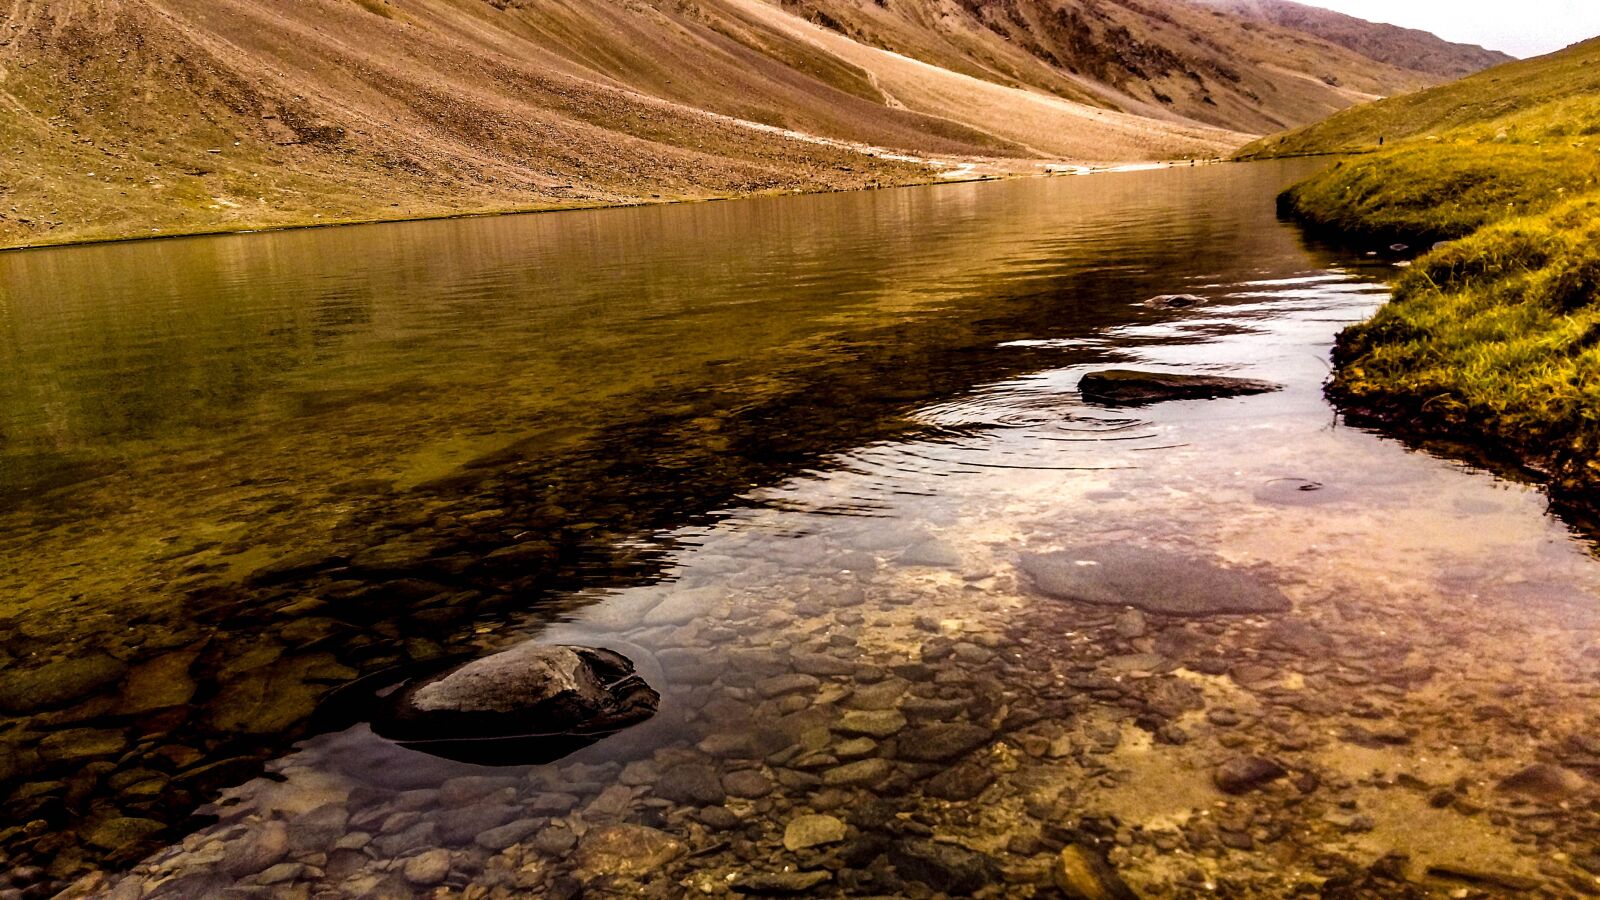 Samsung Galaxy A5 sample photo. River, lake, nature photography